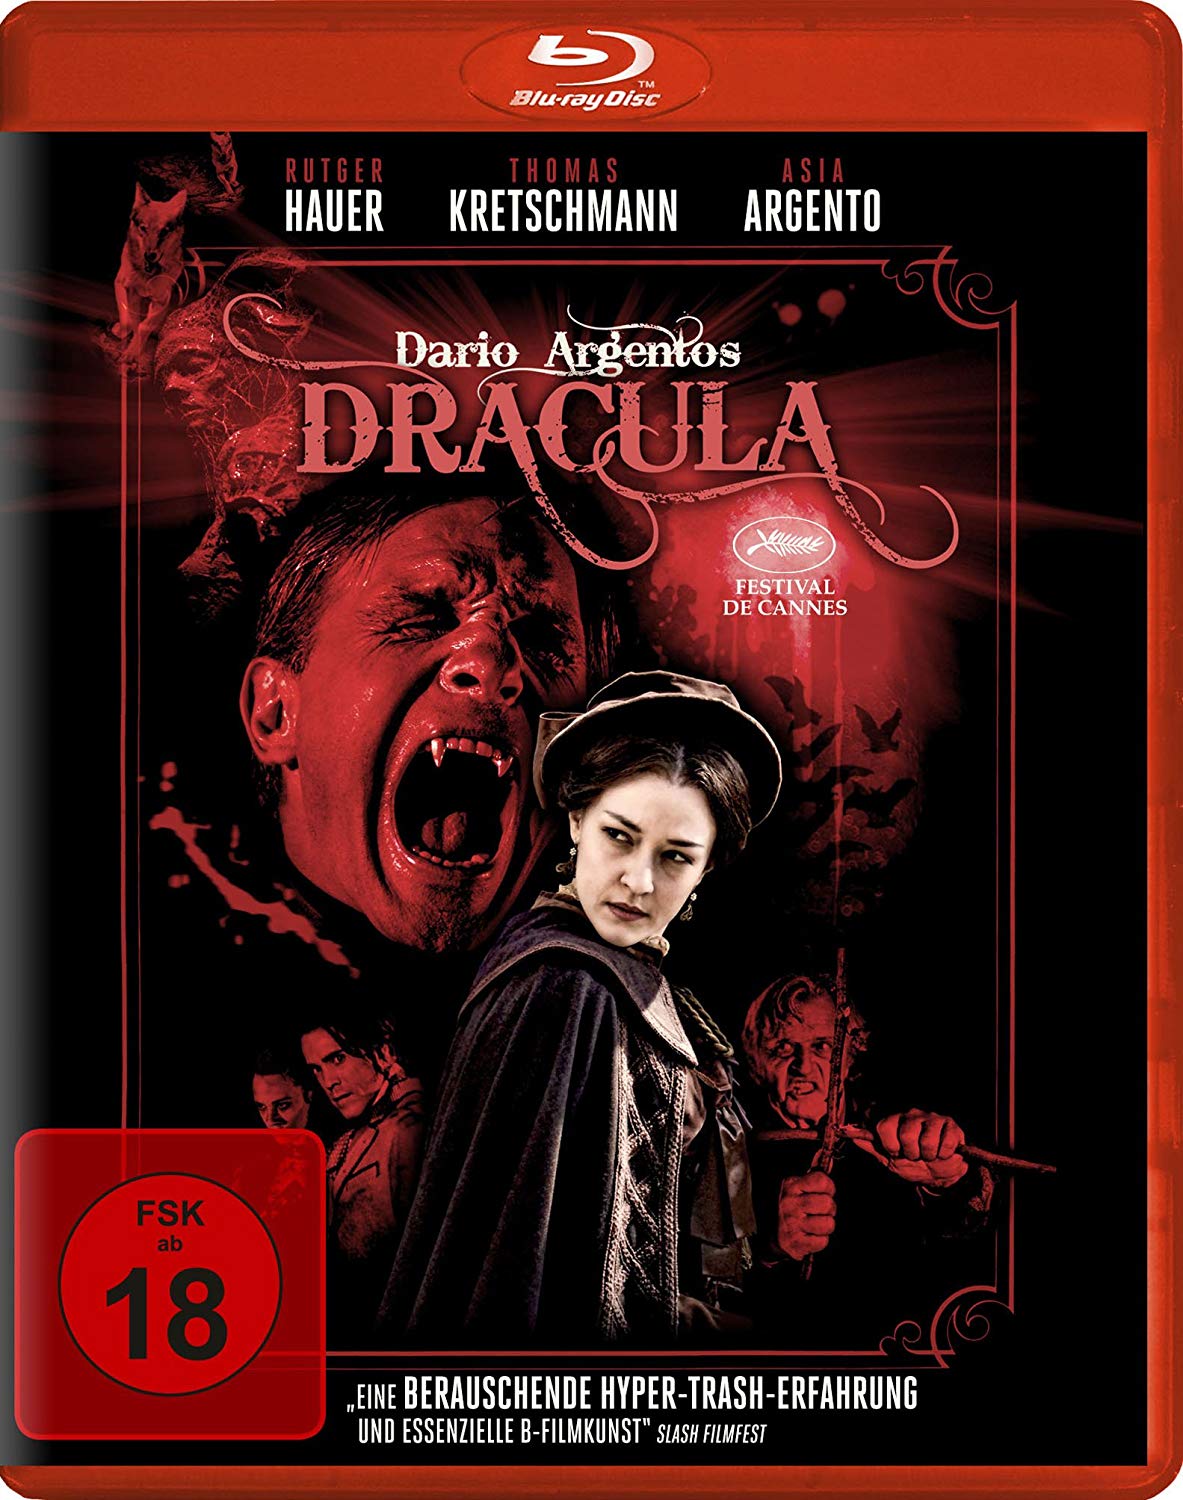 [德古拉3D].Dario.Argento's.Dracula.2012.GER.BluRay.1080p.AVC.DTS-HD.MA.7.1-CrsS     36.65G" D. z5 C3 c) B" |' b5 P' f* j-1.jpg